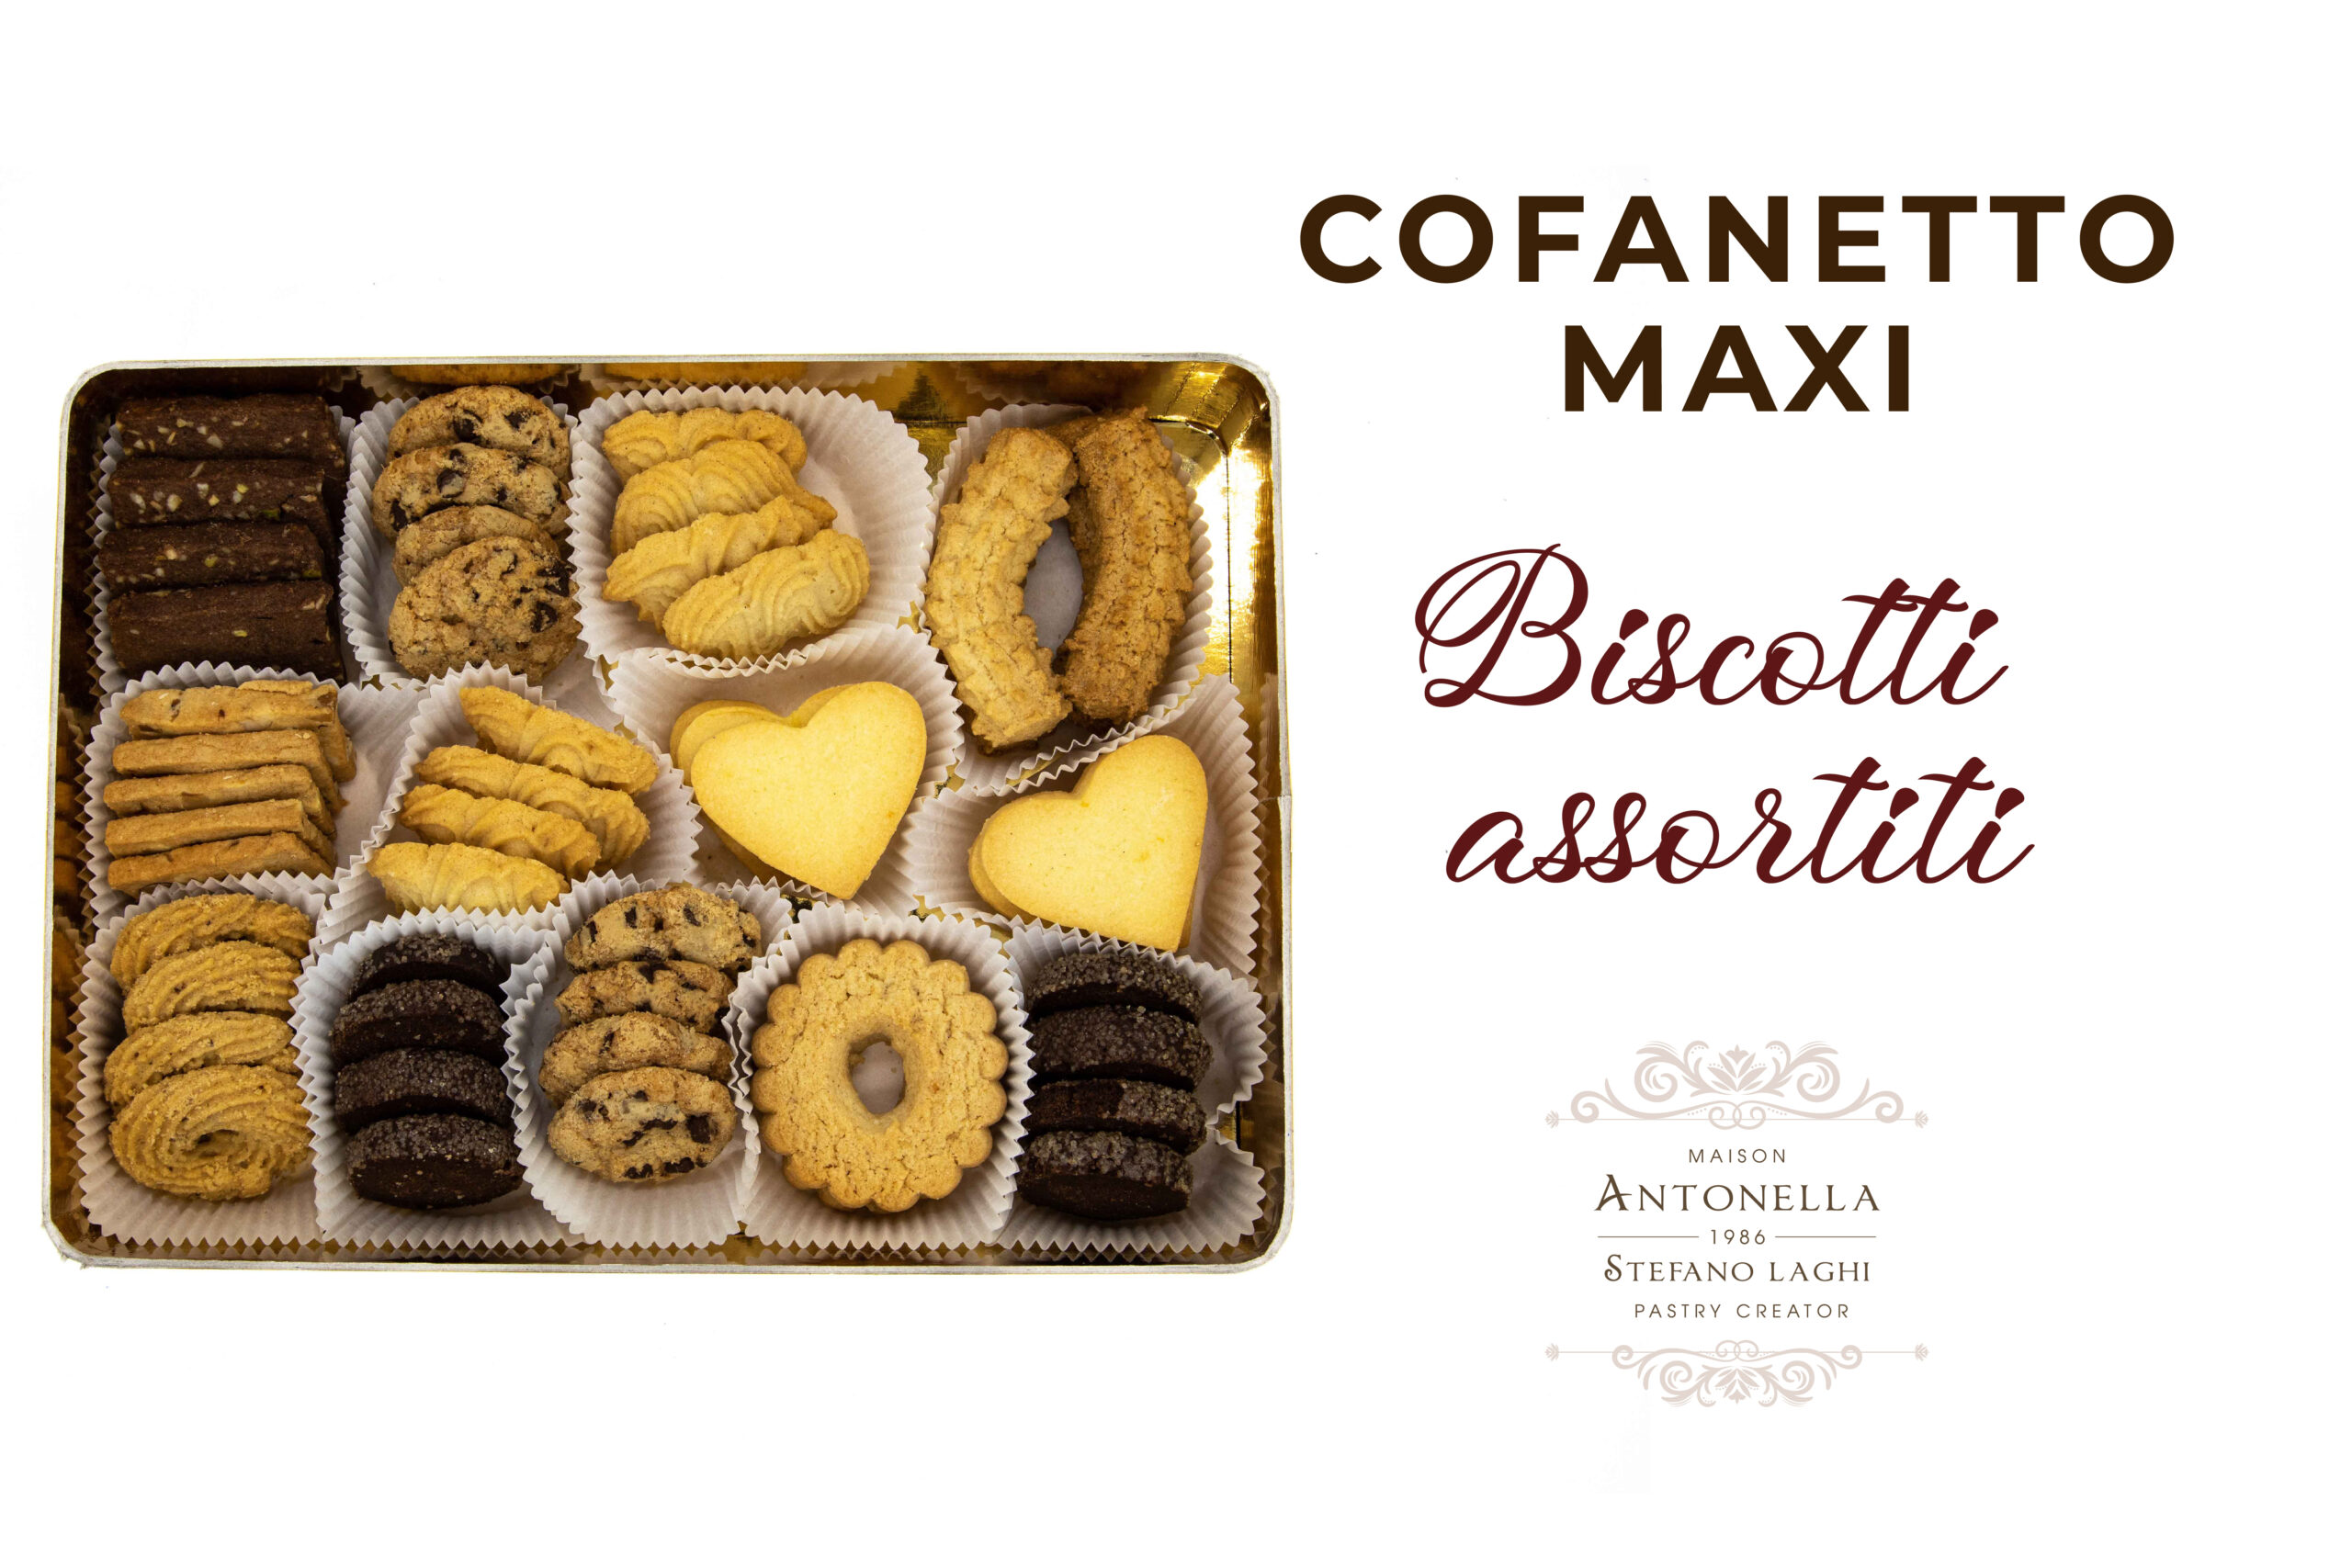 Biscotti assortiti: Confezione MAXI - Maison Antonella 1986